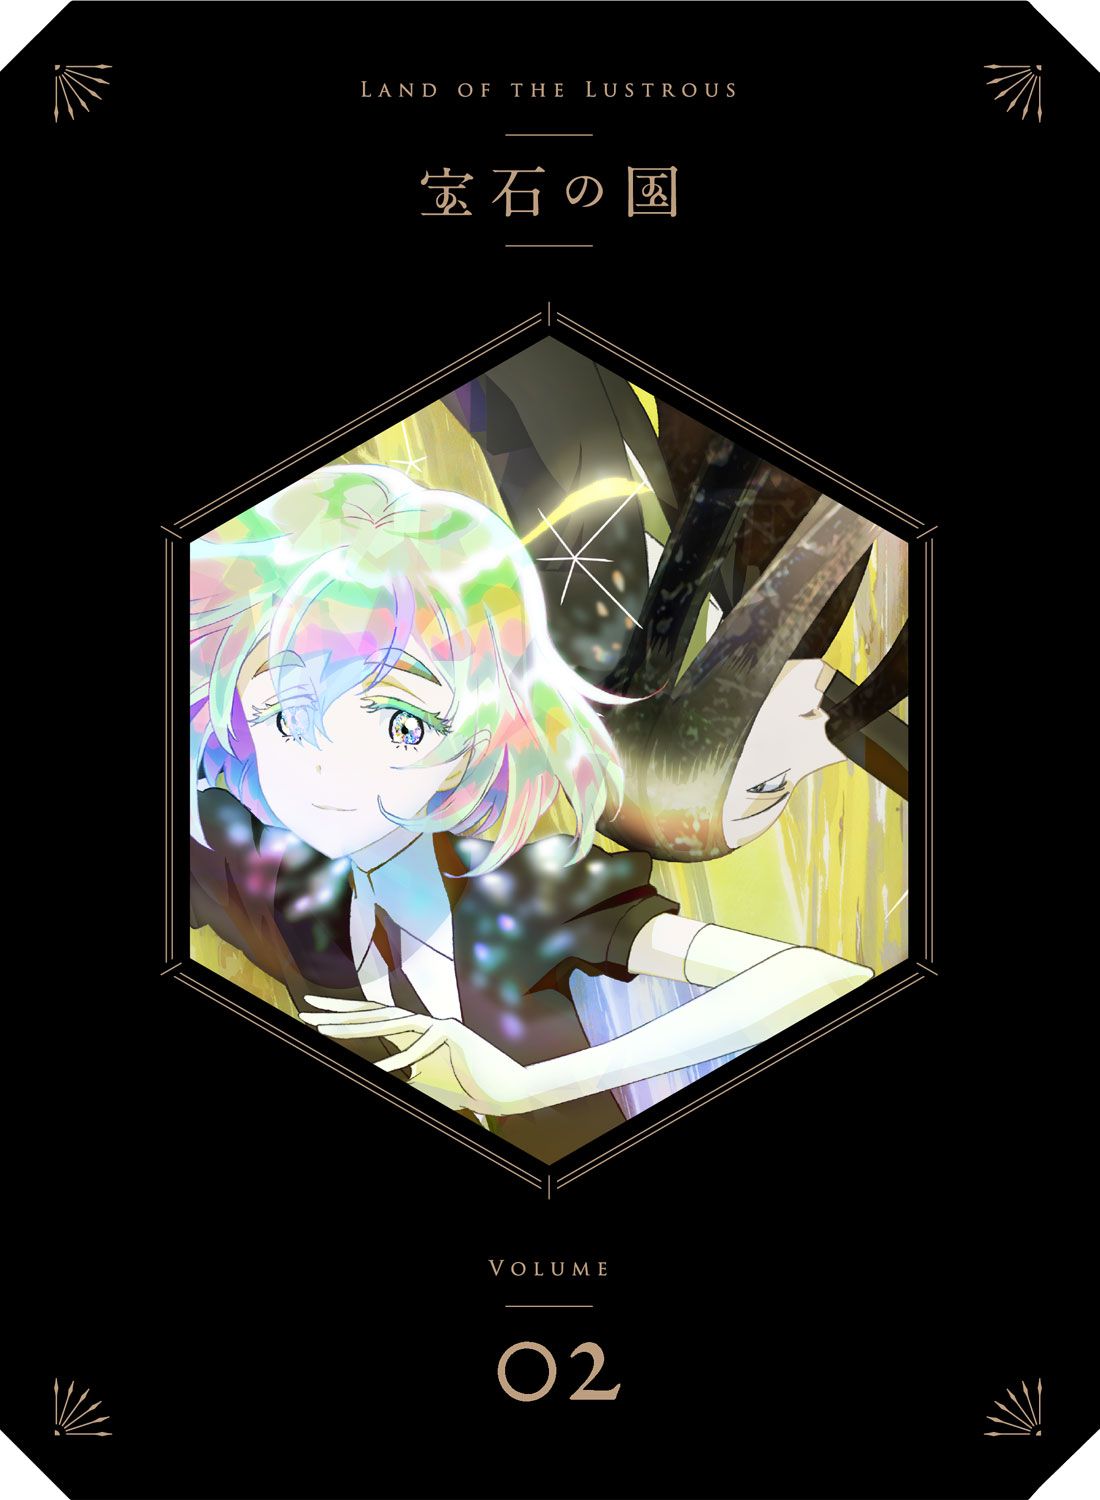 宝石の国 Vol 2 Blu Ray 初回生産限定版 第2巻 作品一覧 Toho Animation Store 東宝アニメーションストア